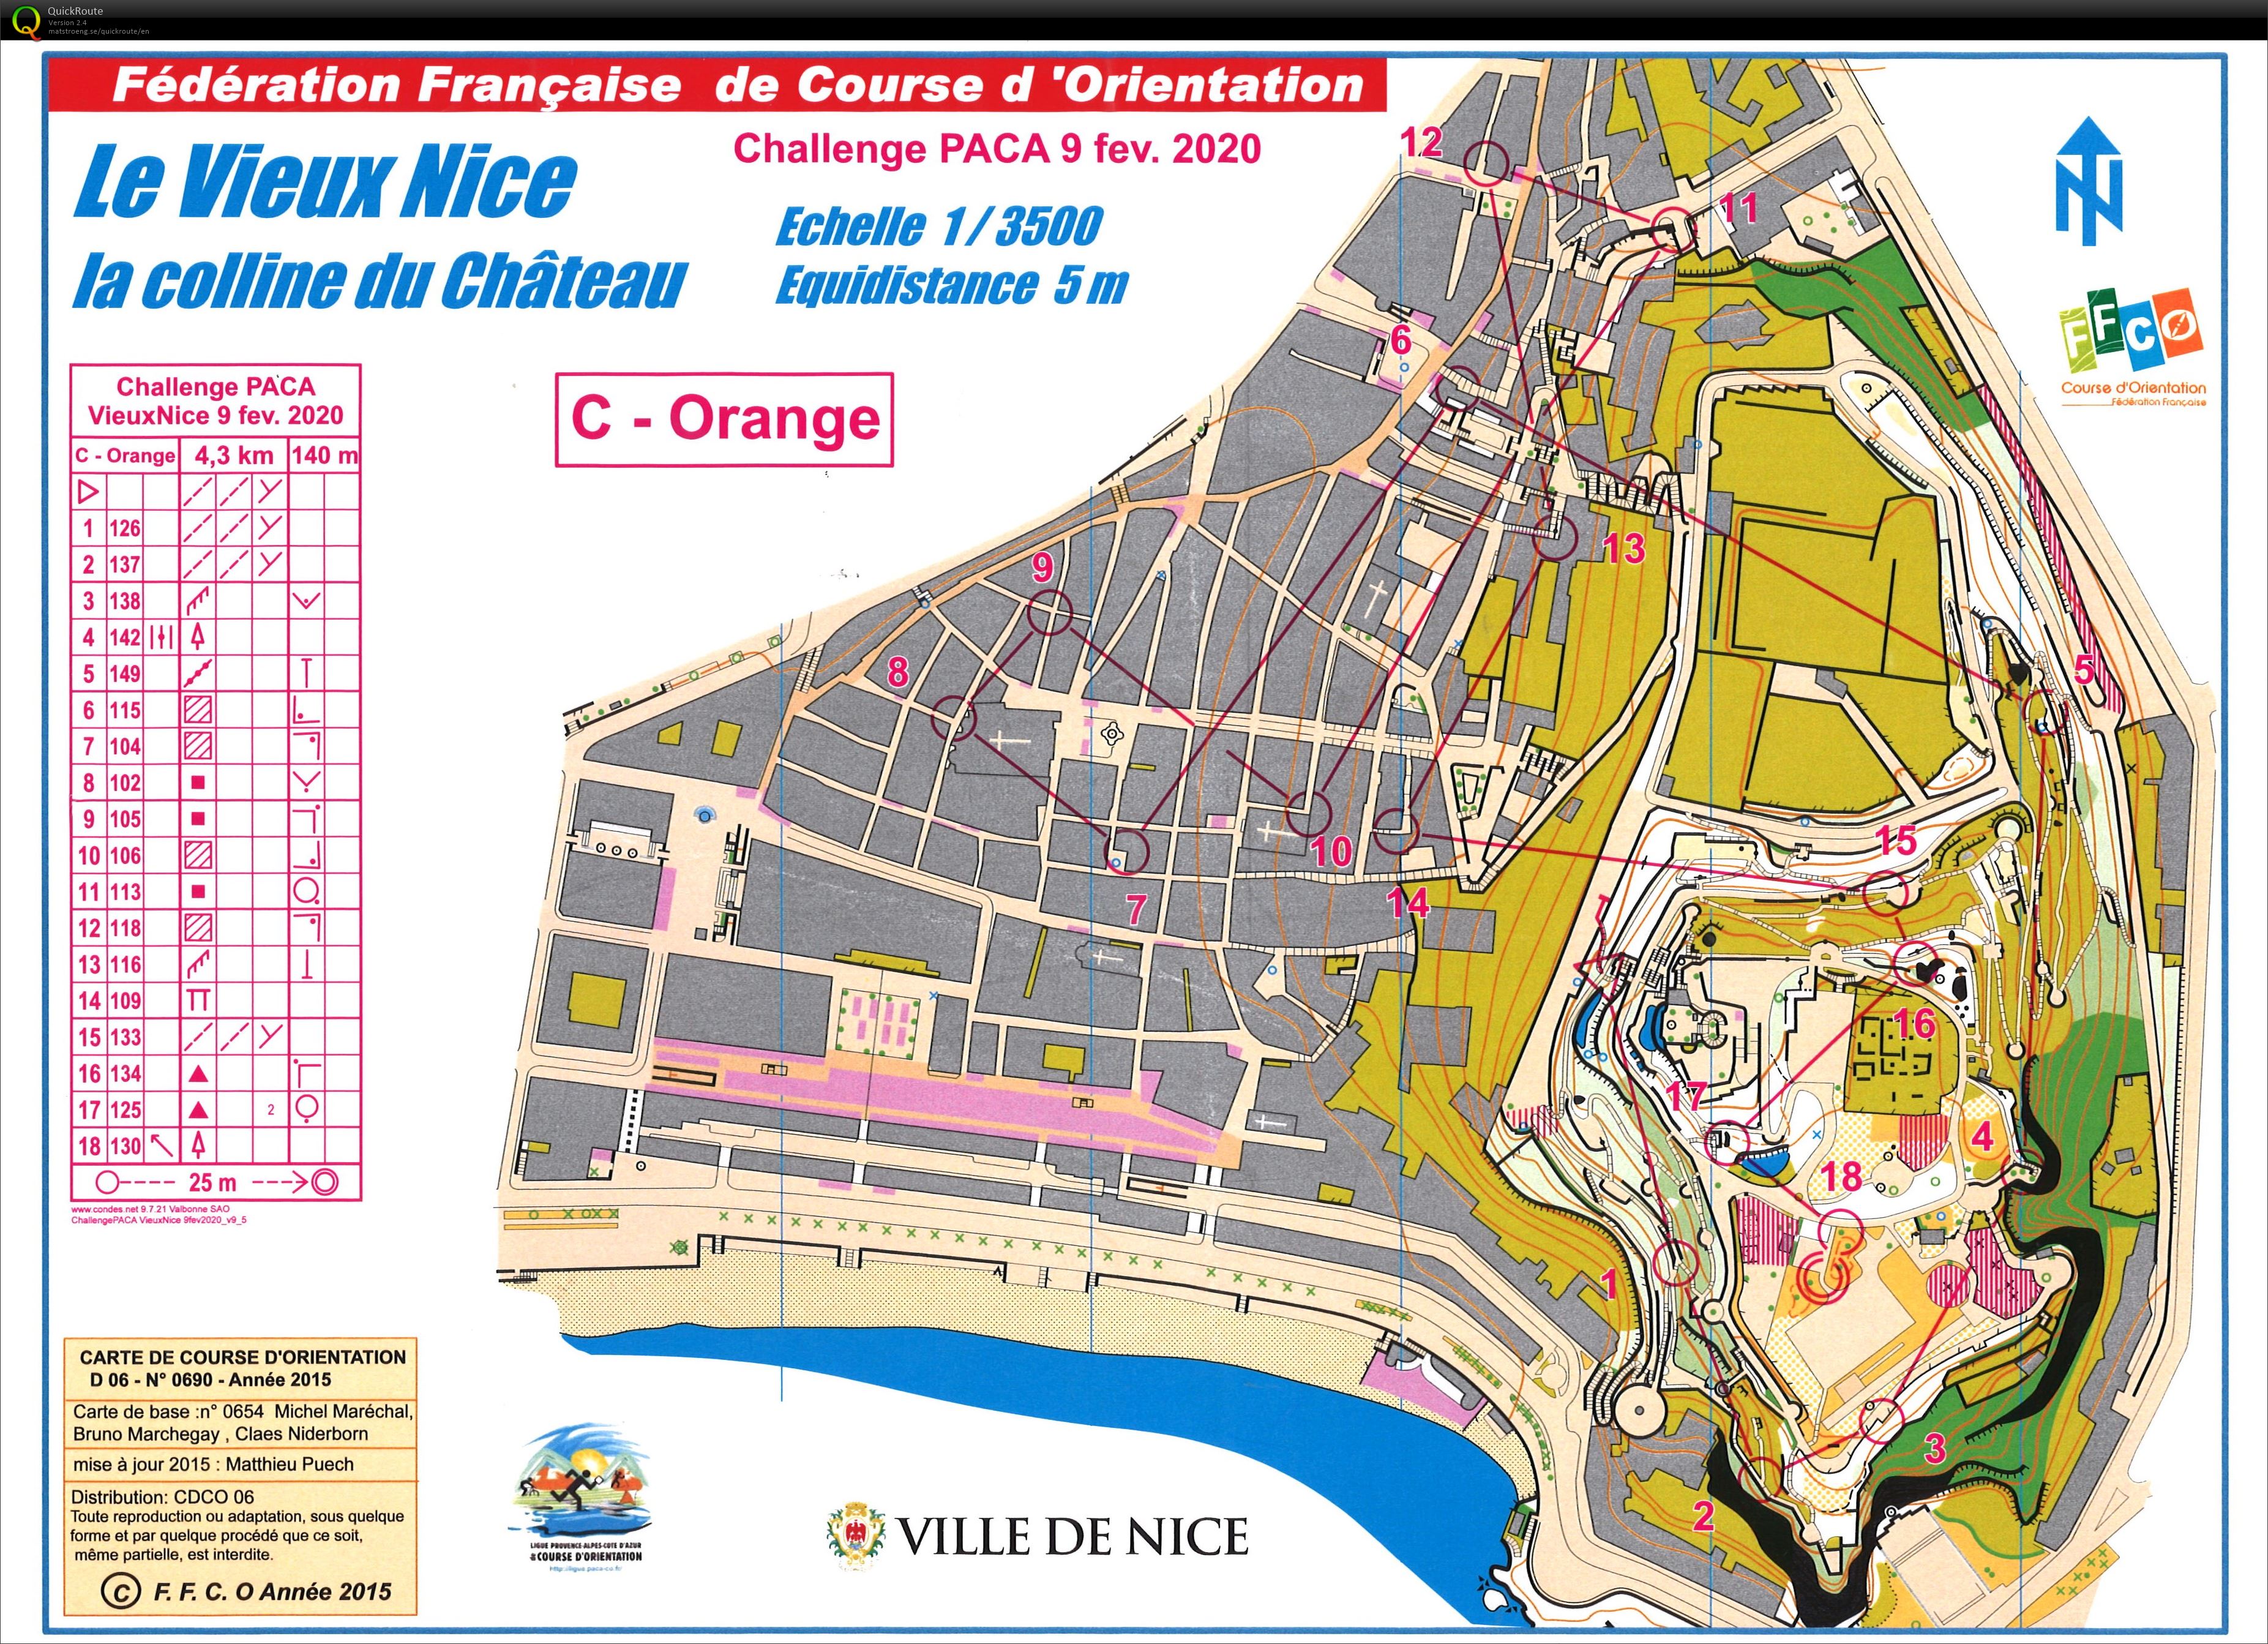 Régionale CN Vieux Nice (09/02/2020)